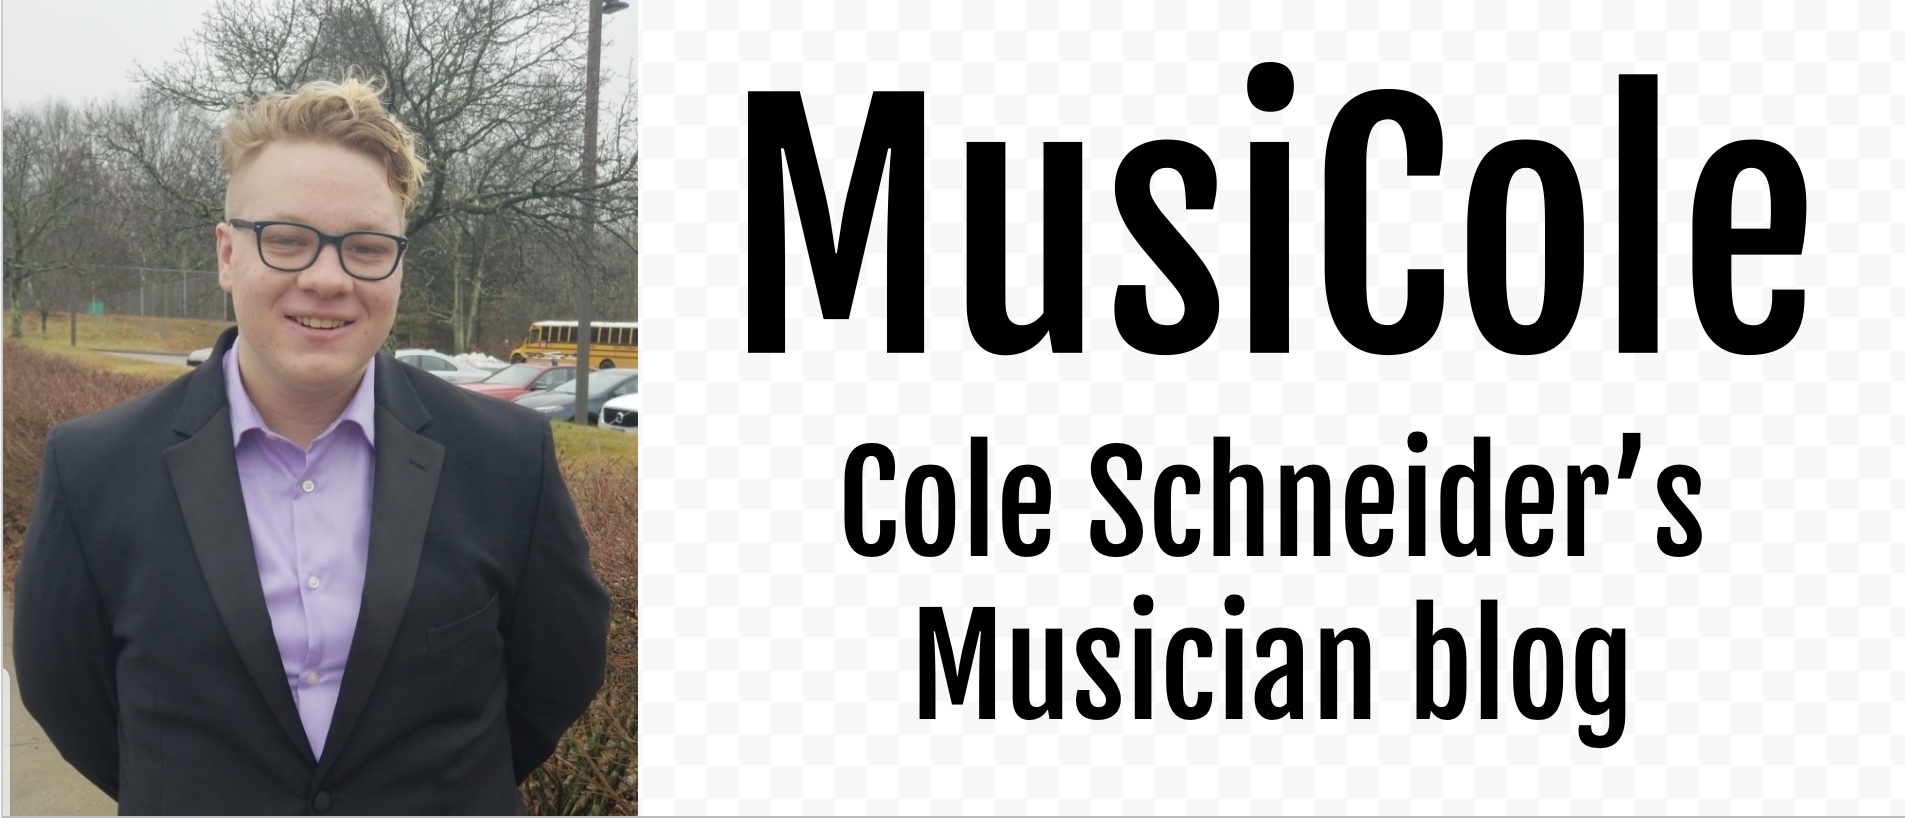 Cole Schneider